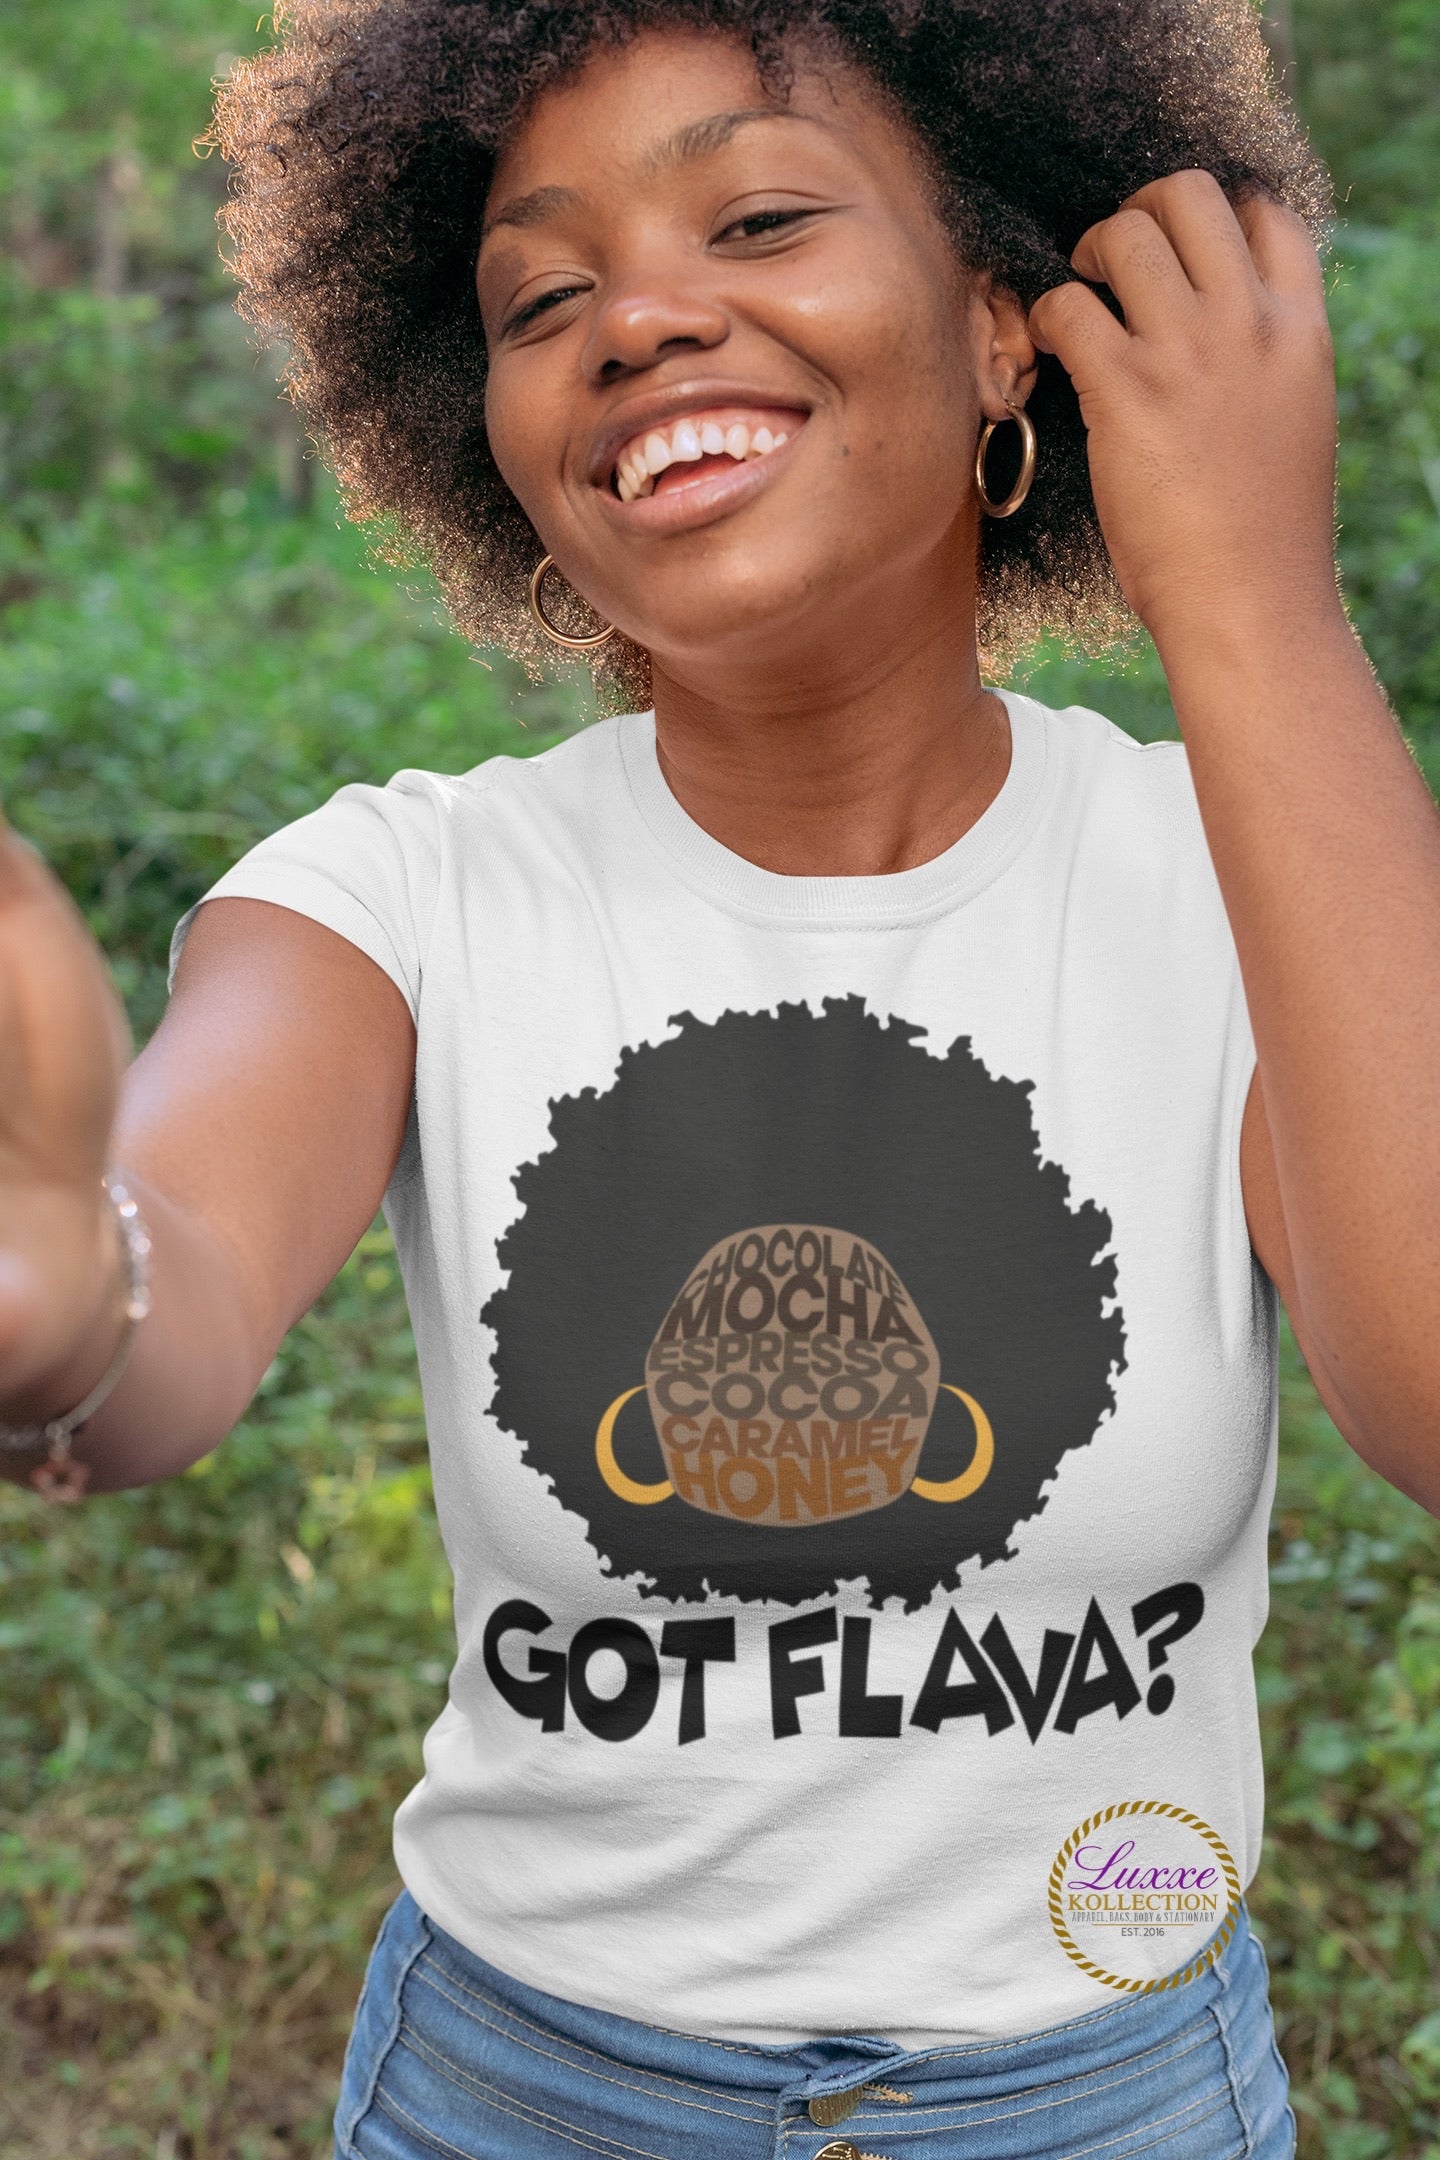 Got Flava T-shirt